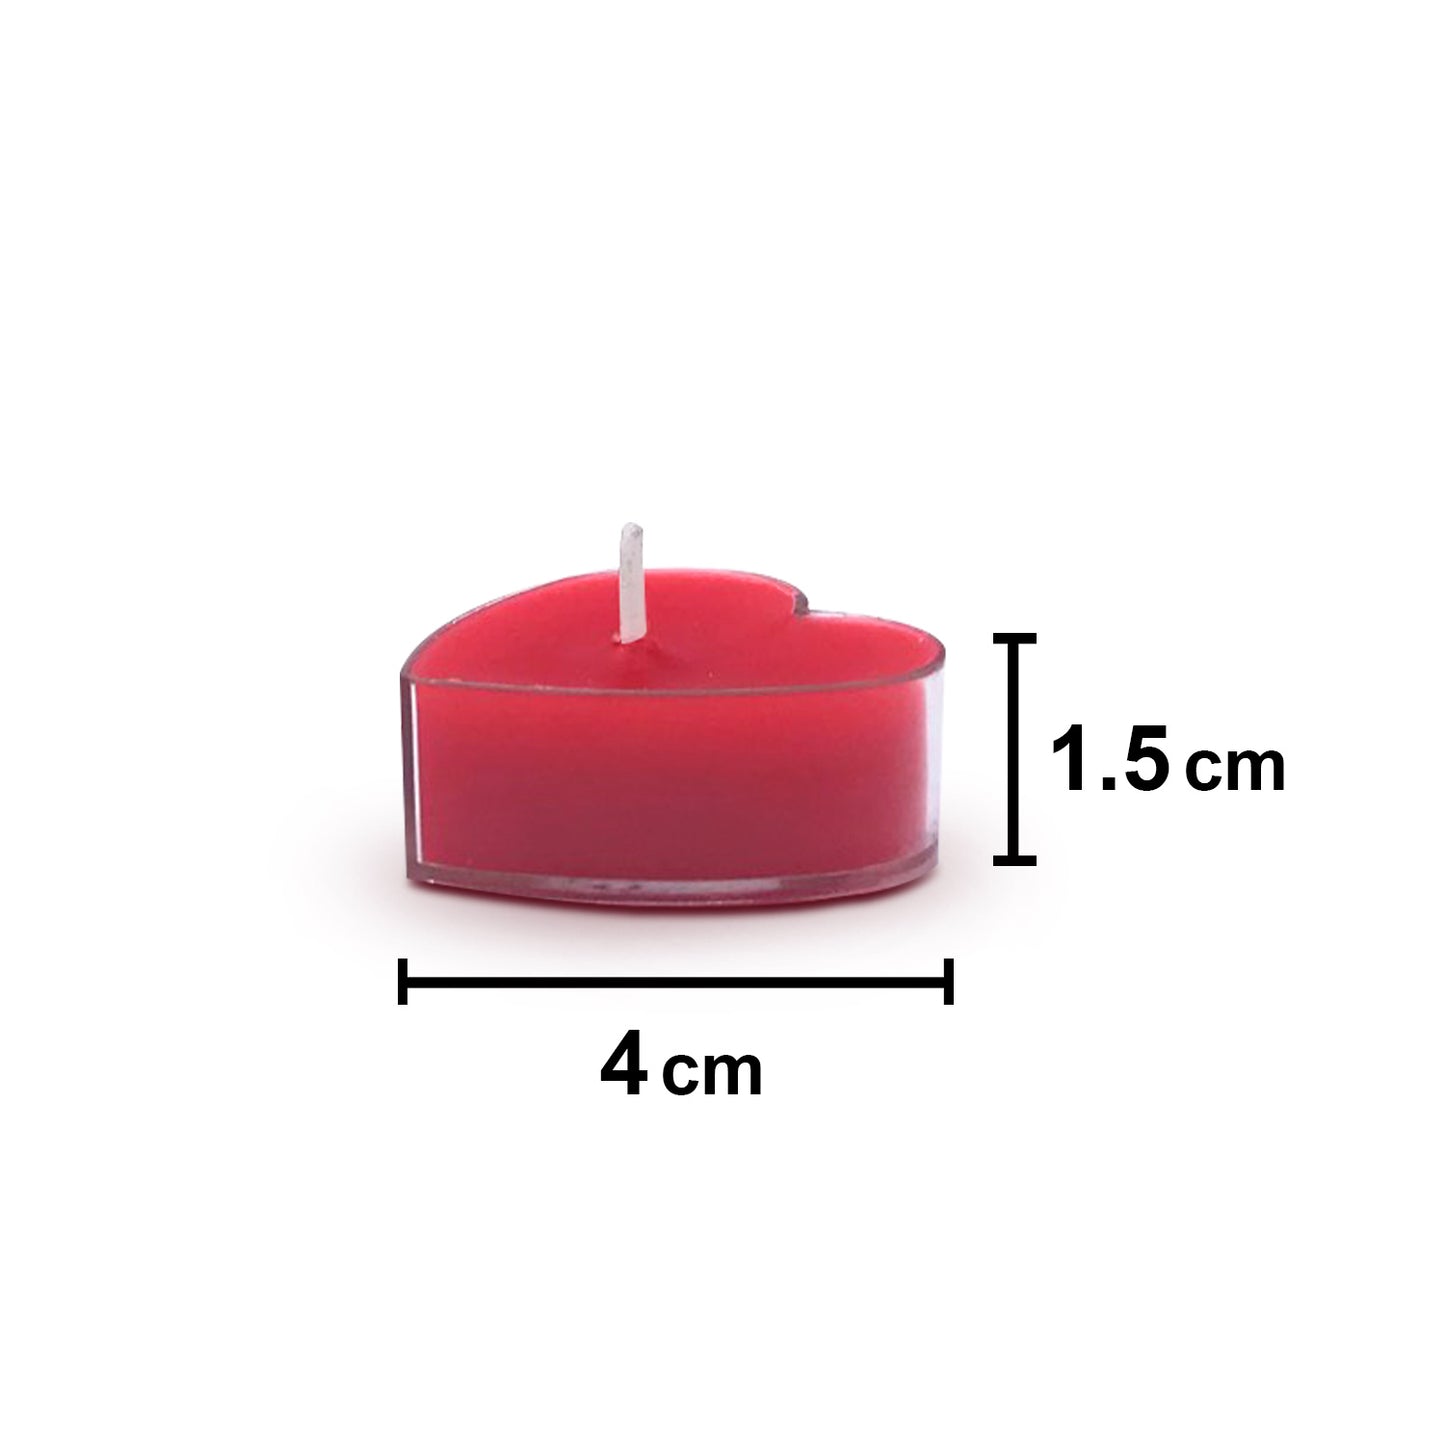 AuraDecor Fragrance Rose Heart Shape Tealight ( Bulk Pack of 100 Packets )